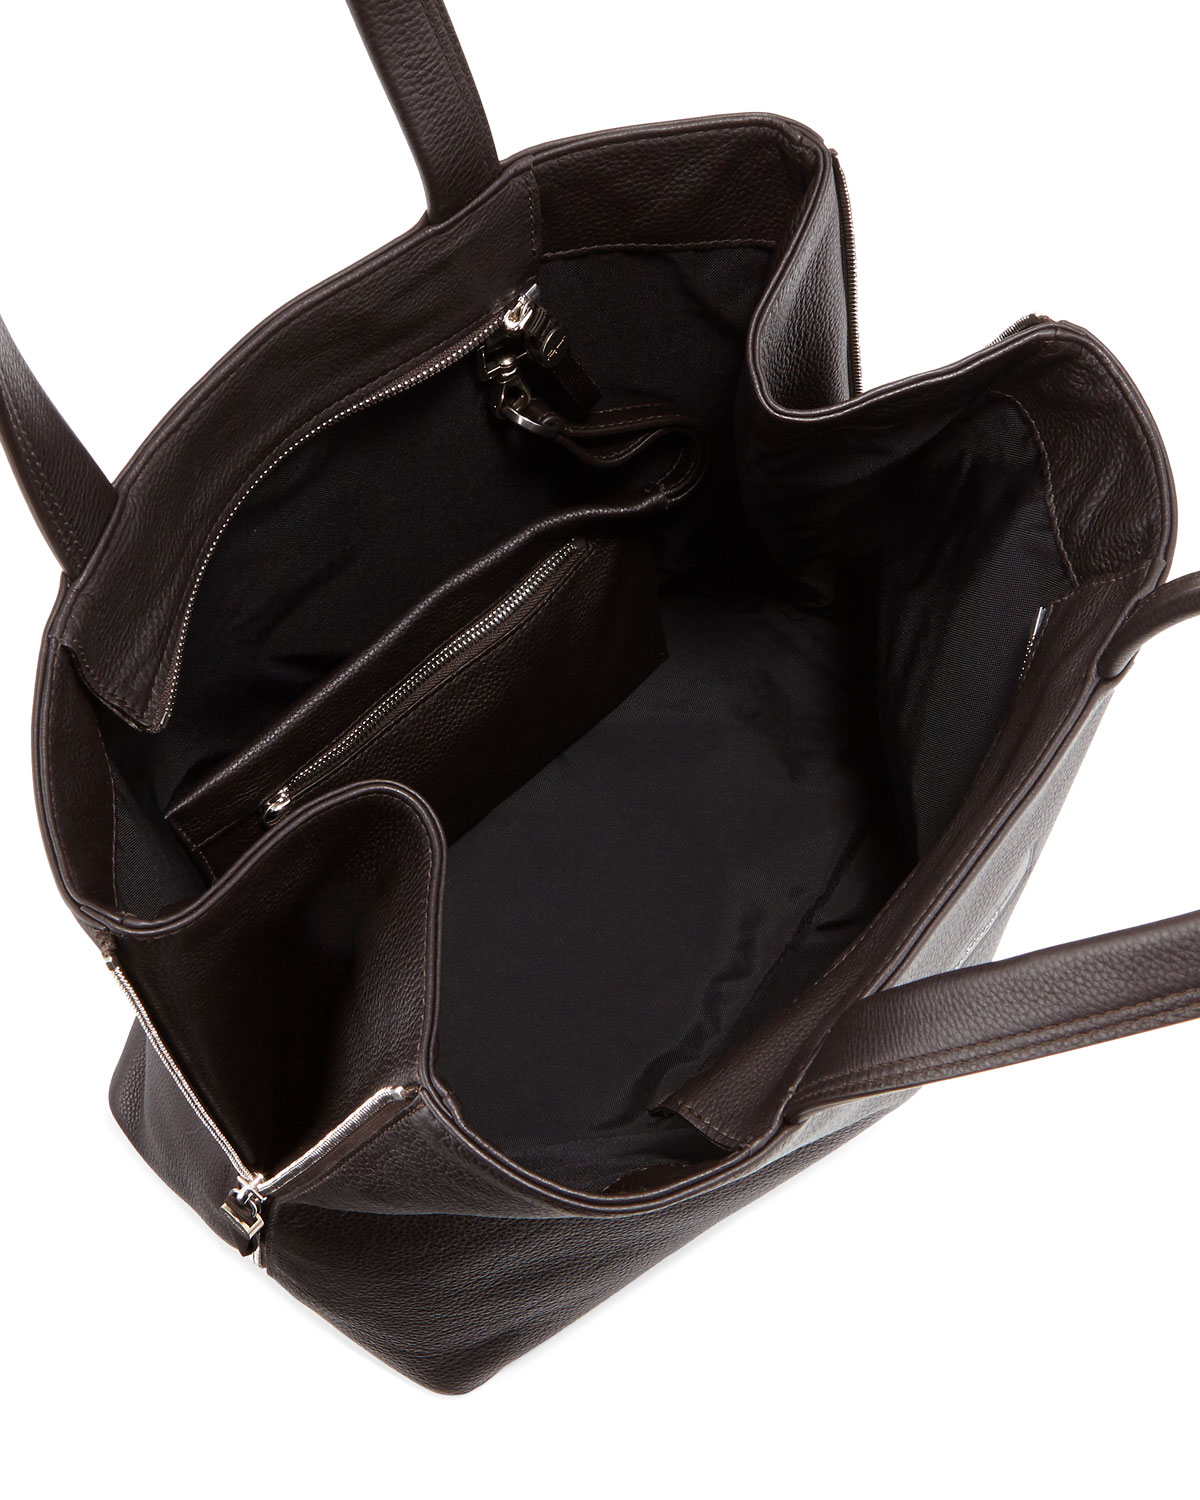 Ferragamo Leather Open-top Shopper Bag in Brown - Lyst